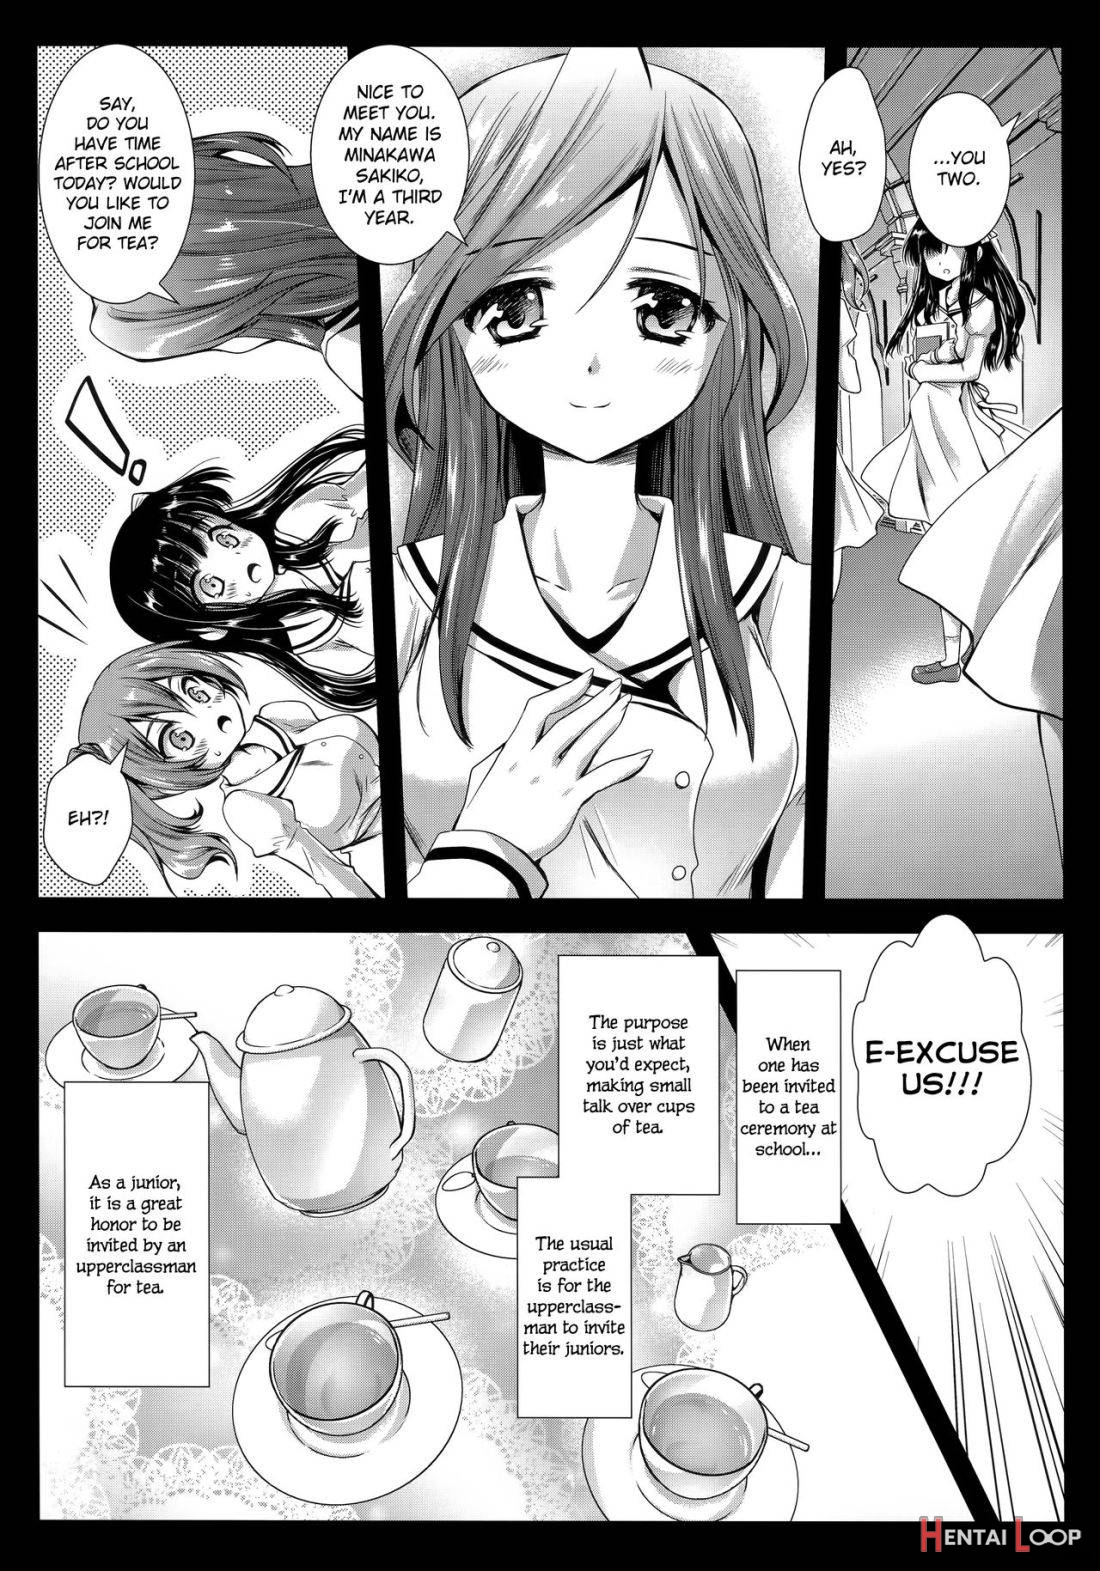 Seifuku Shokushu 6 page 3